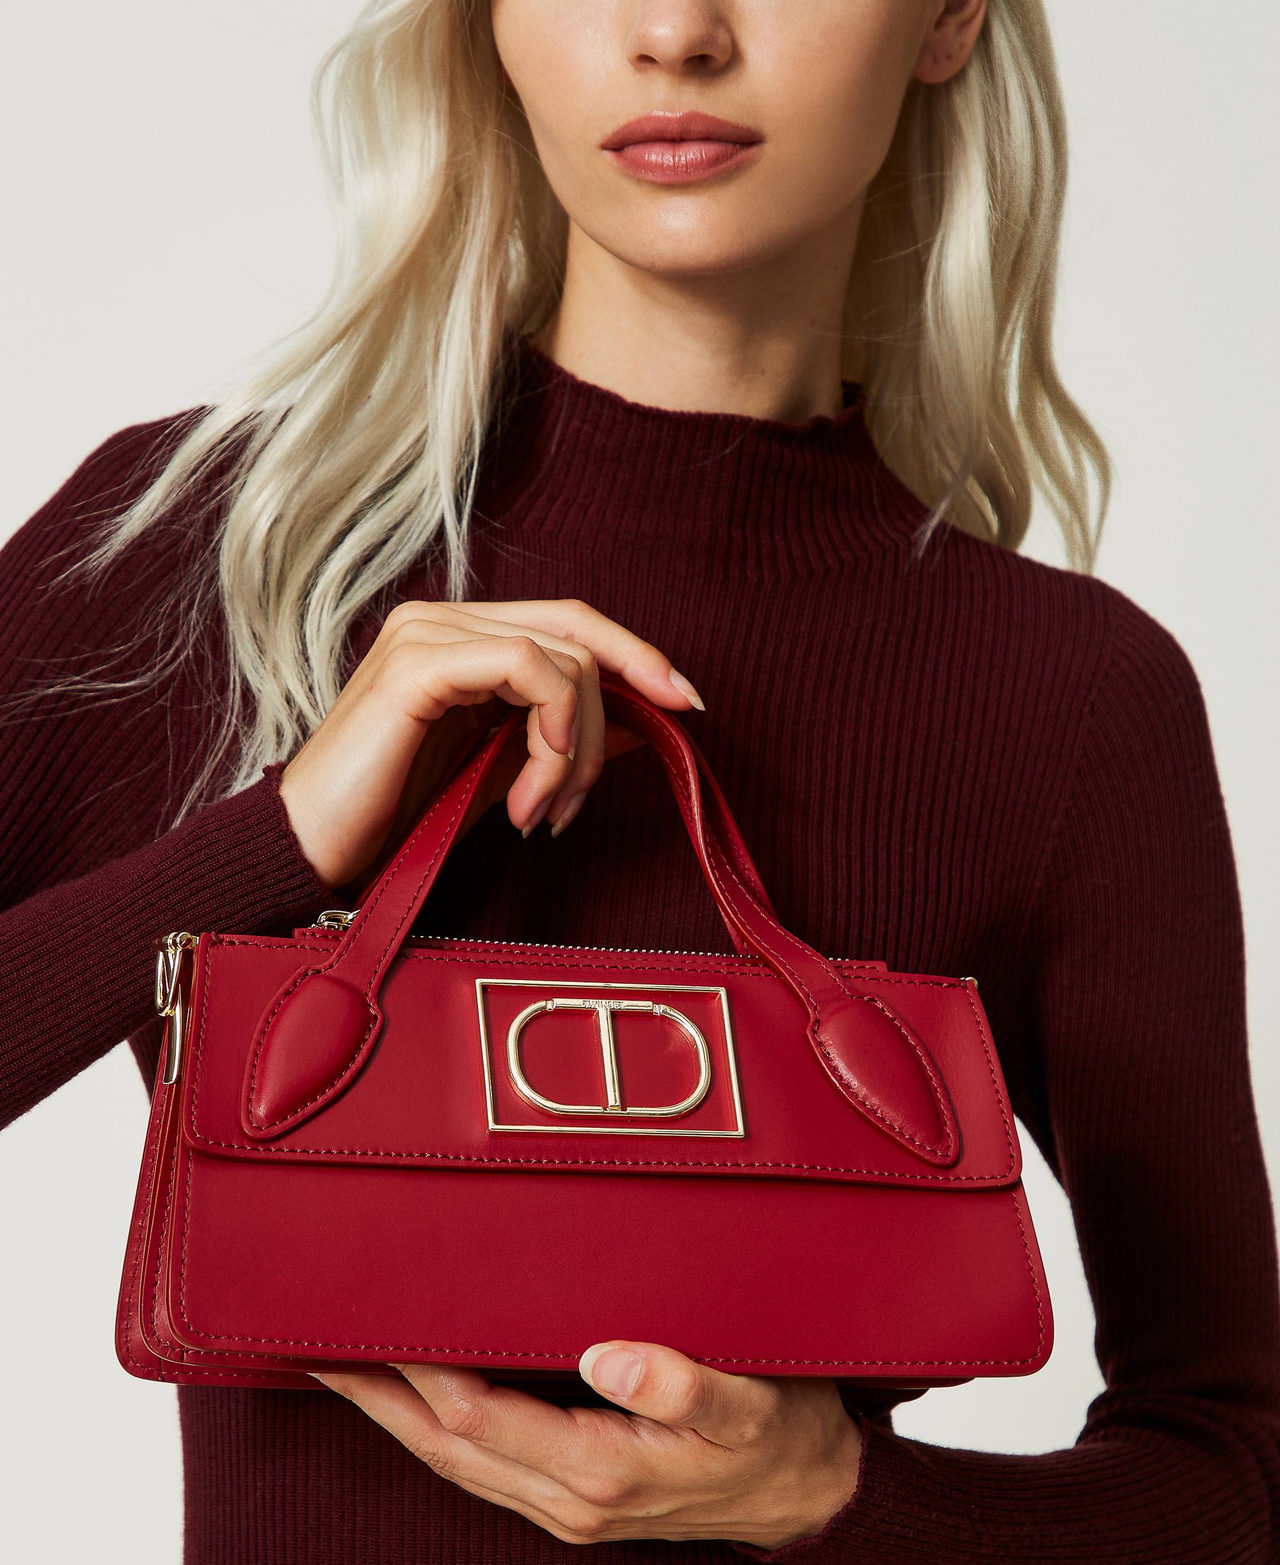 Petit sac rouge charmant et original Les Tropéziennes GIR-TZ-03-RED  accessoires tendance chic